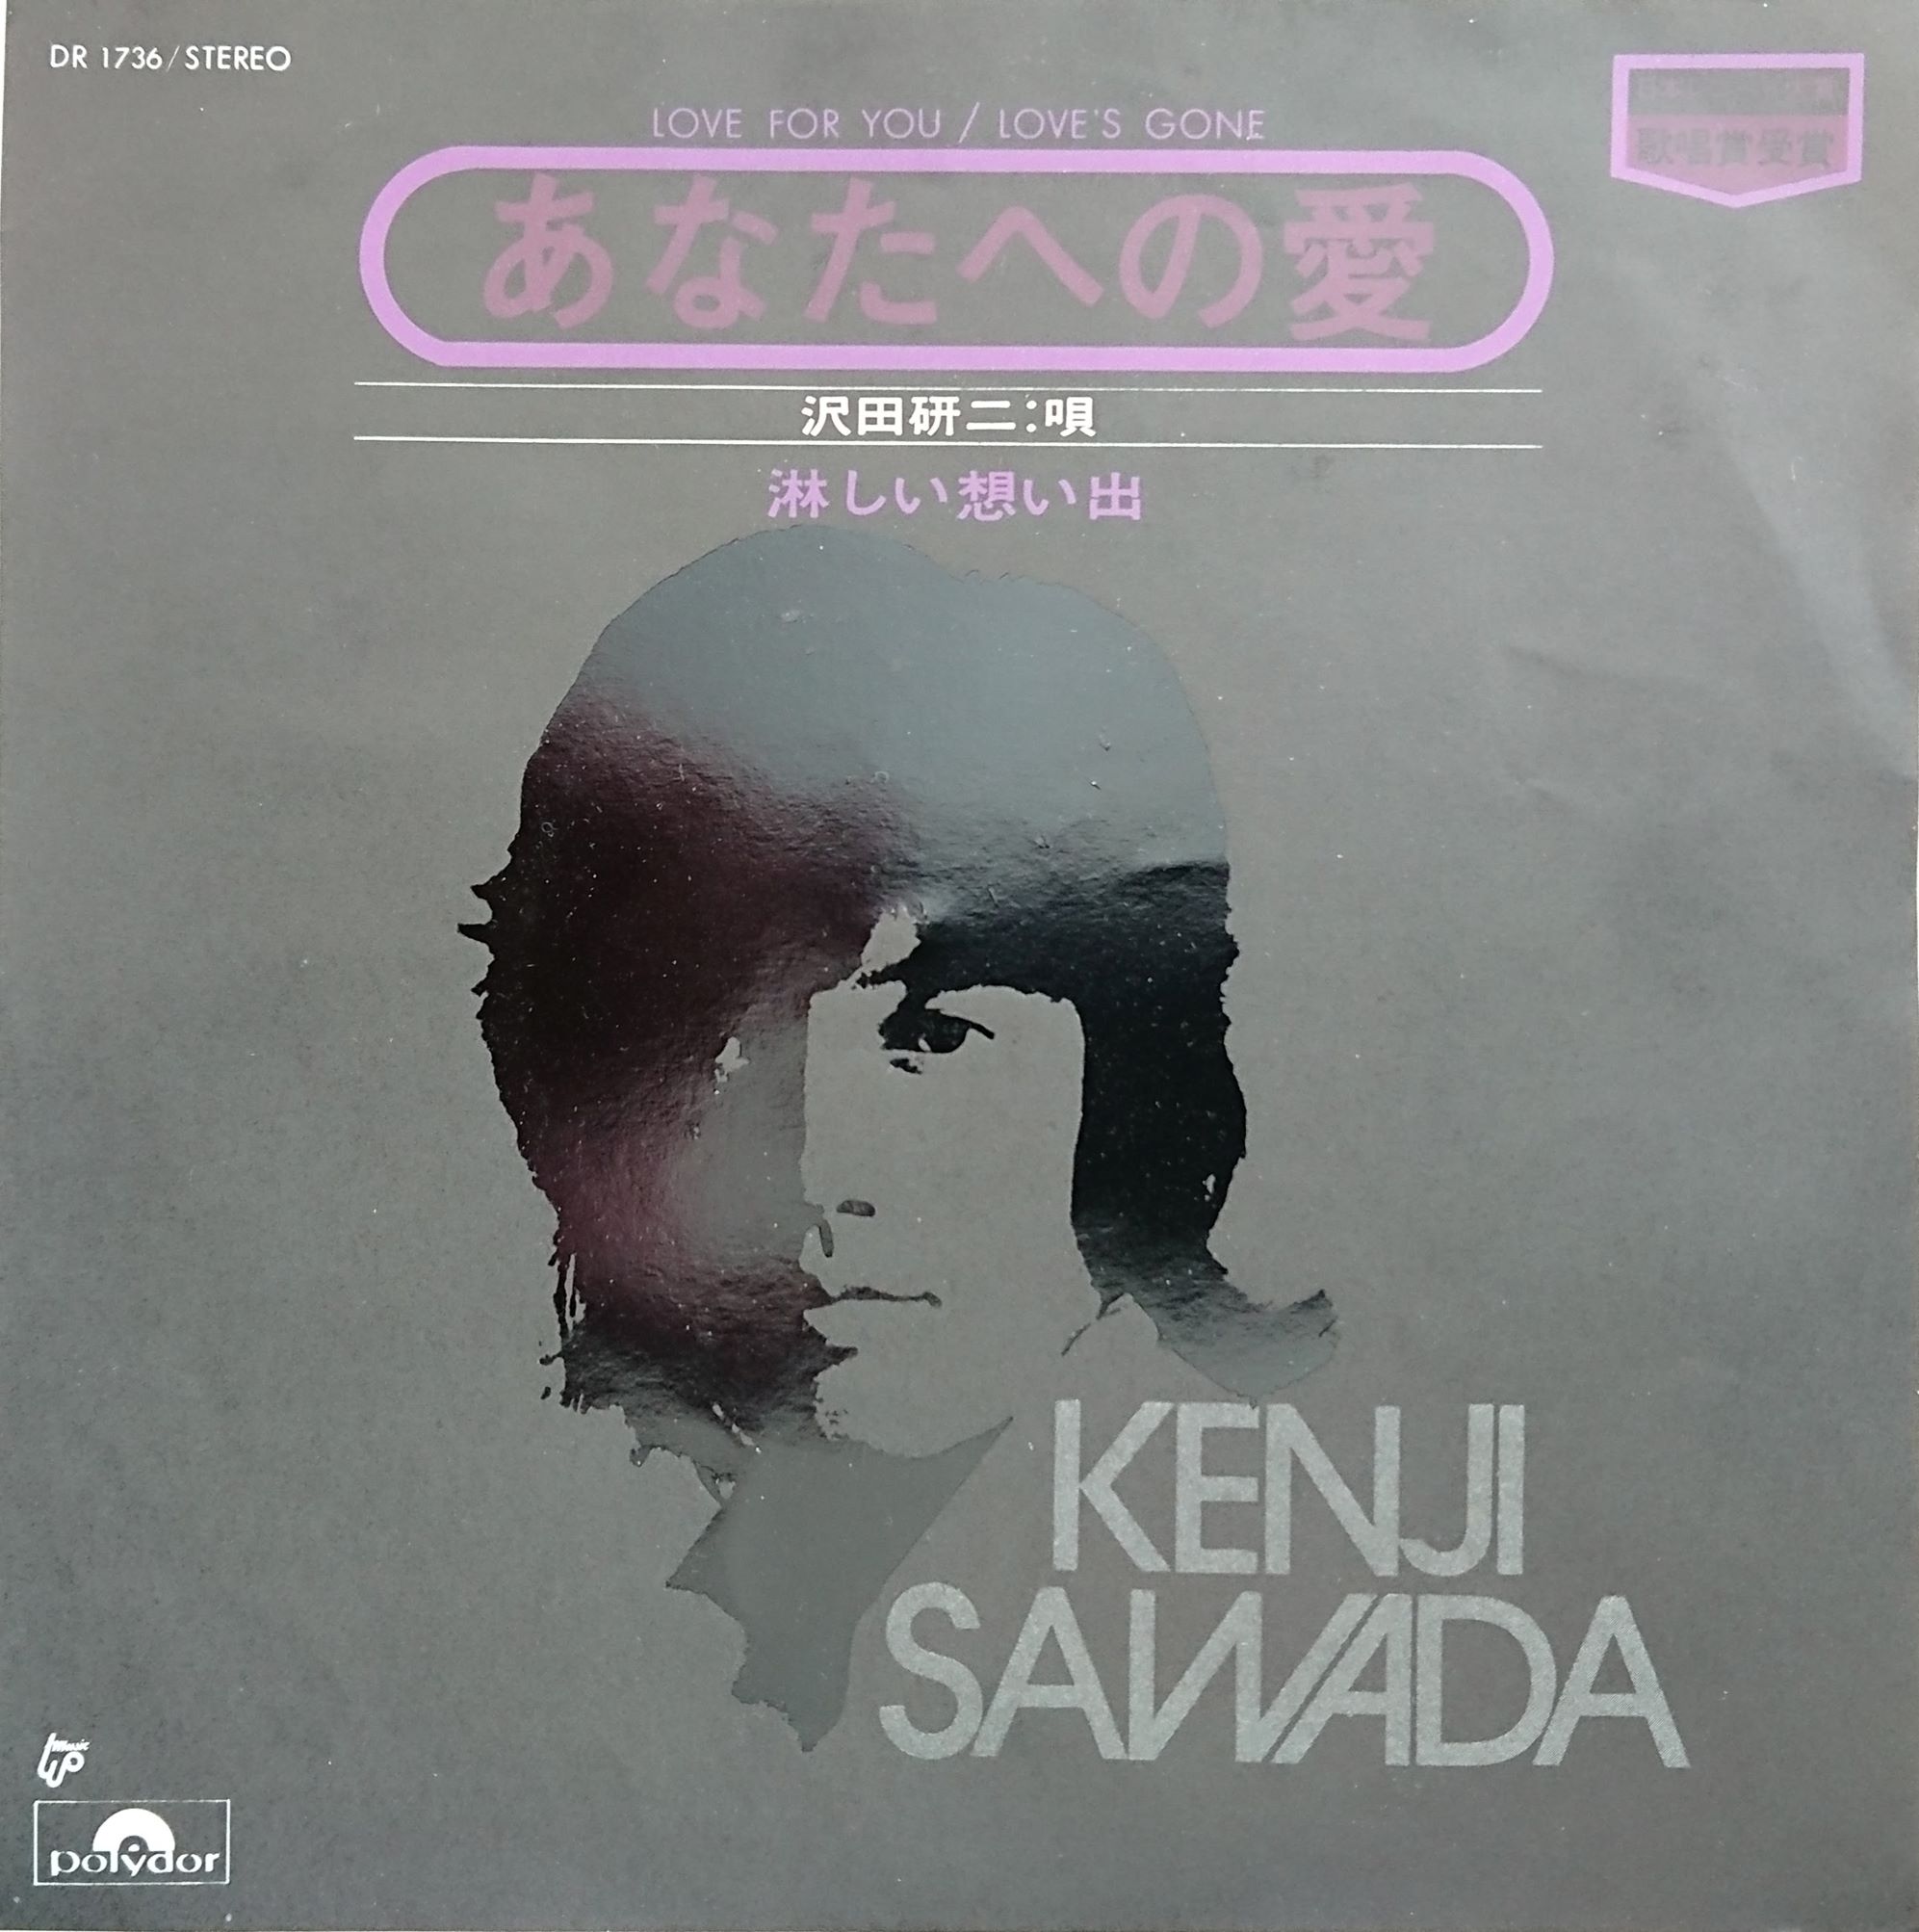 Jpop80ss2: Kenji Sawada (沢田研二)